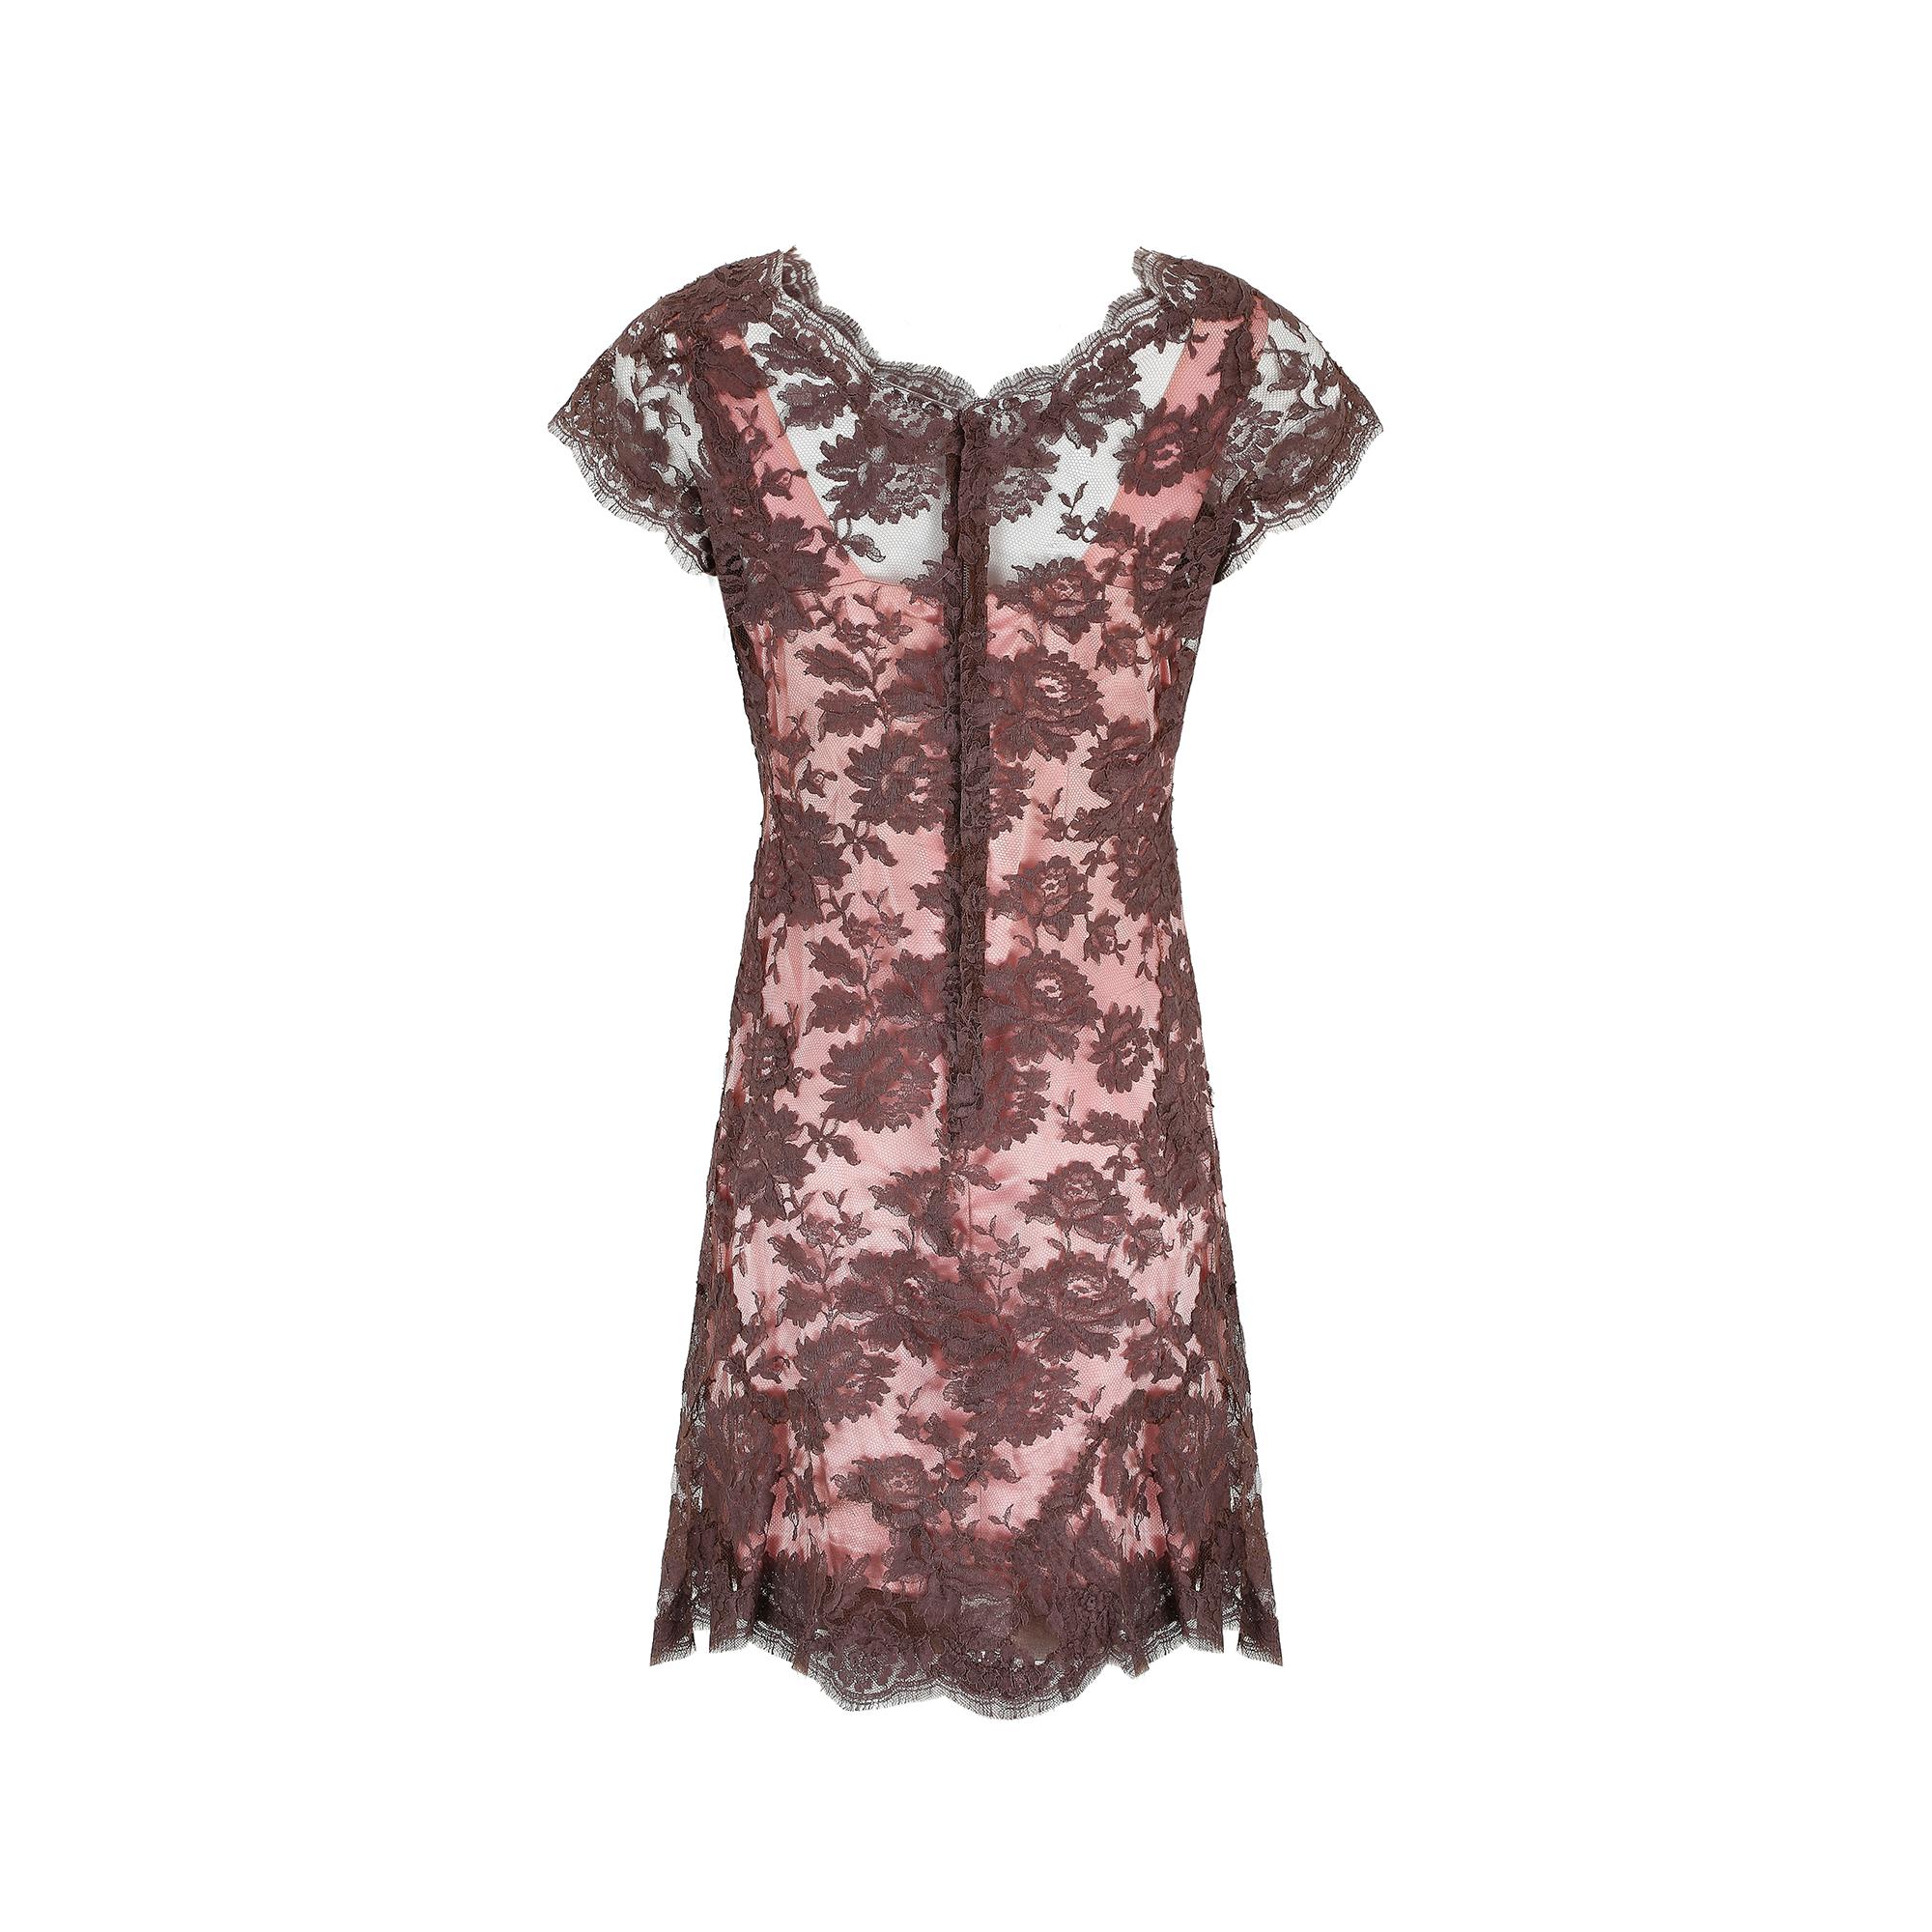 Marron 1950 - Worth, London Couture - Robe fourreau en dentelle brune et rose